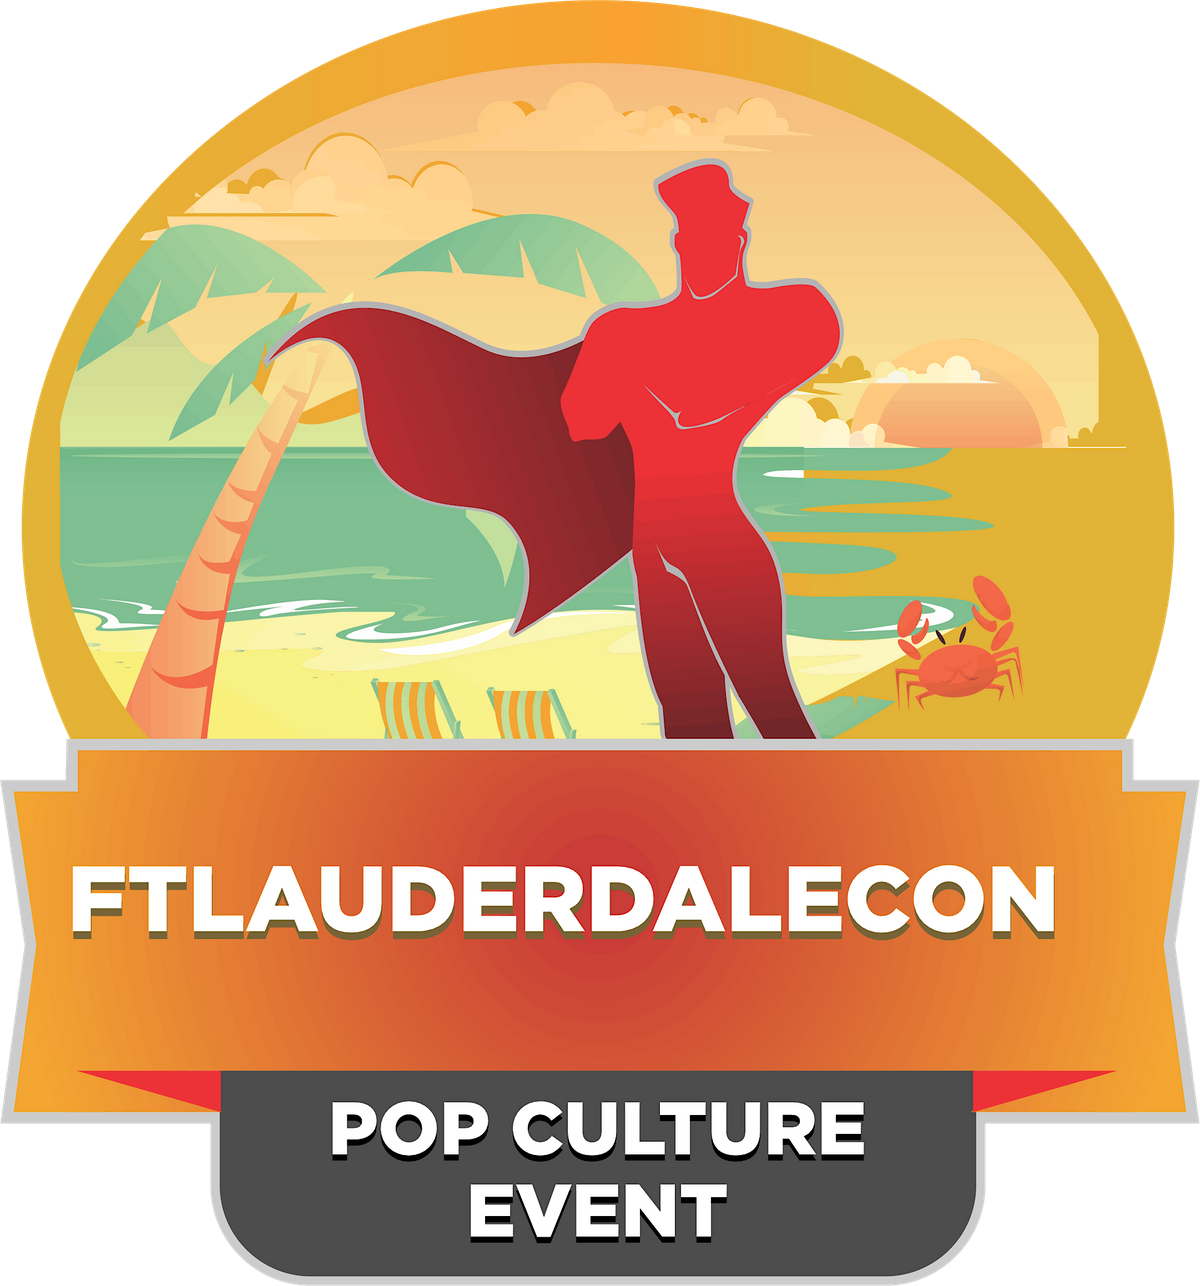 FT-LauderdaleCon - Pop Culture Show